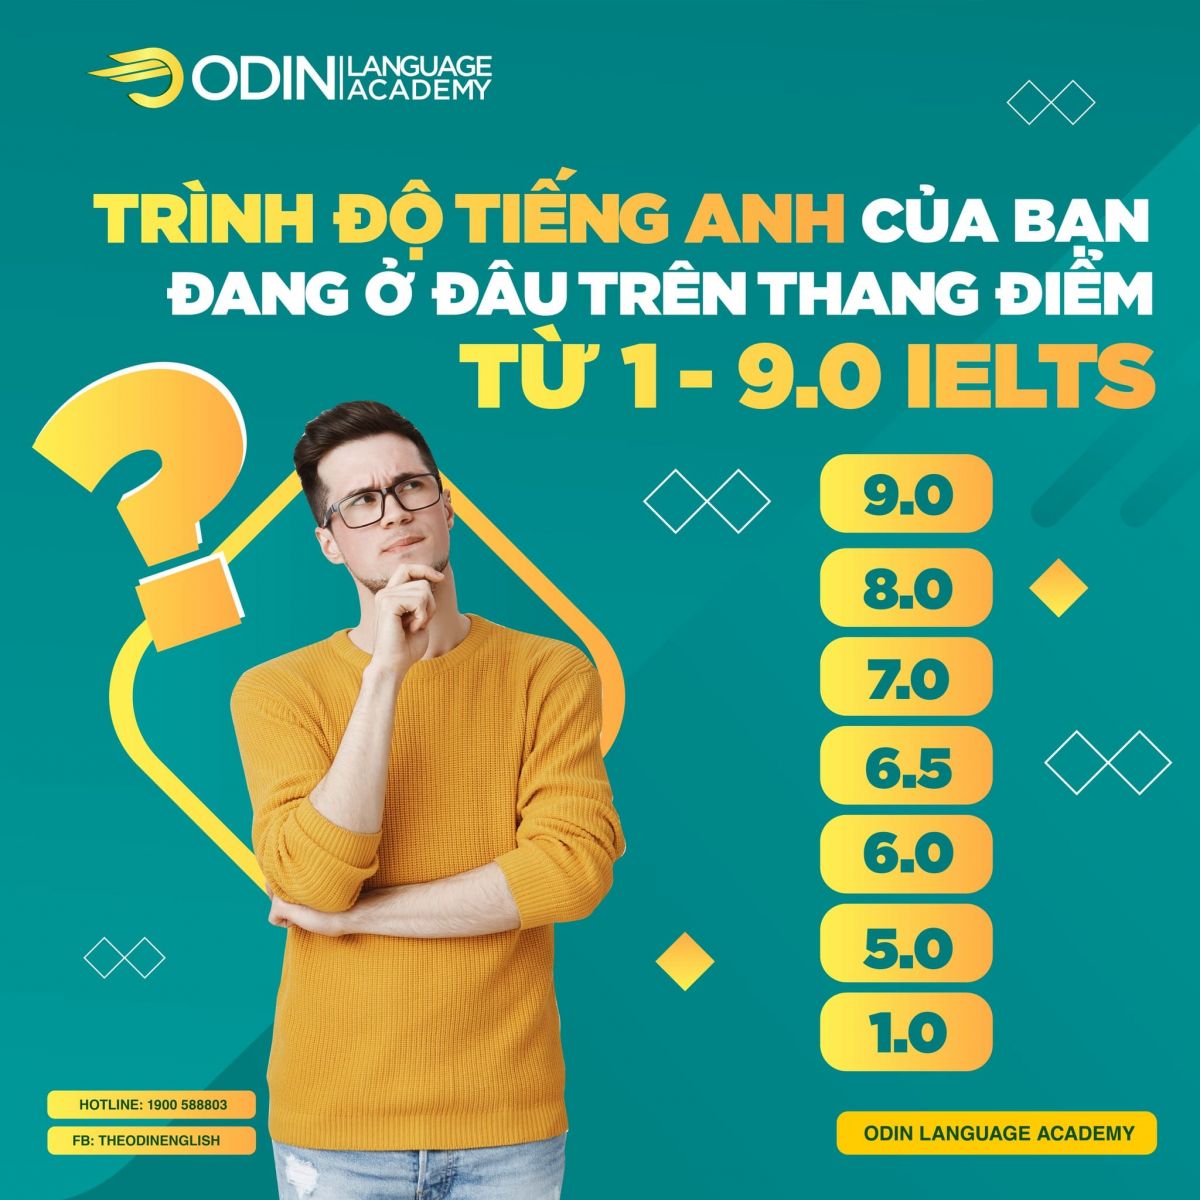 Chi phí học và thi chứng chỉ IELTS cho sinh viên Hà Nội